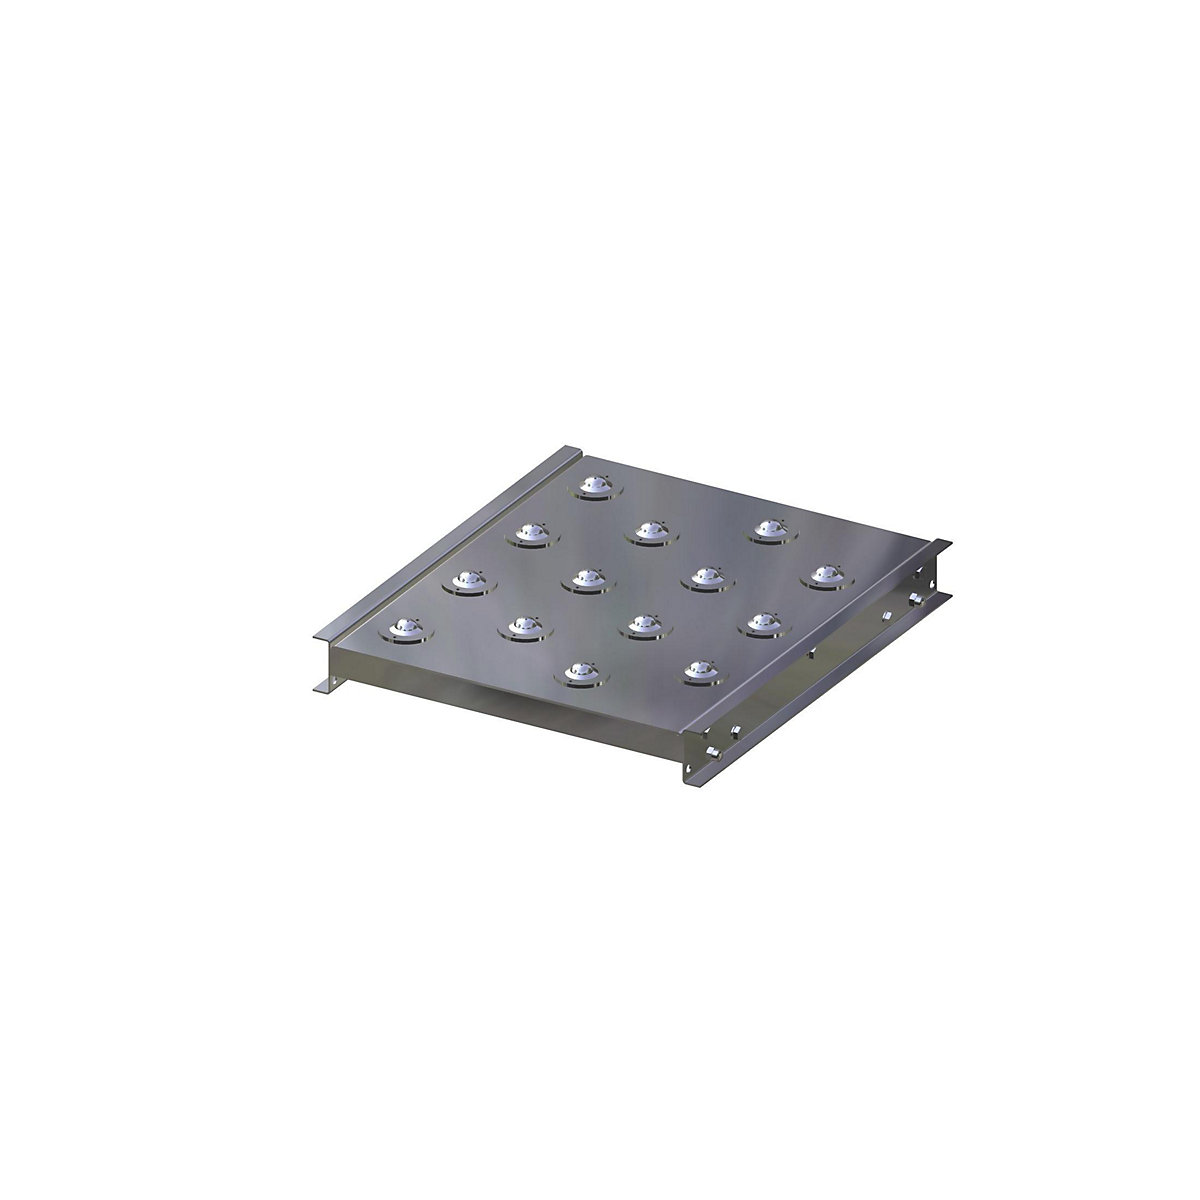 Table à billes porteuses – Gura, largeur voie 400 mm, longueur 500 mm, écartement de 125 mm